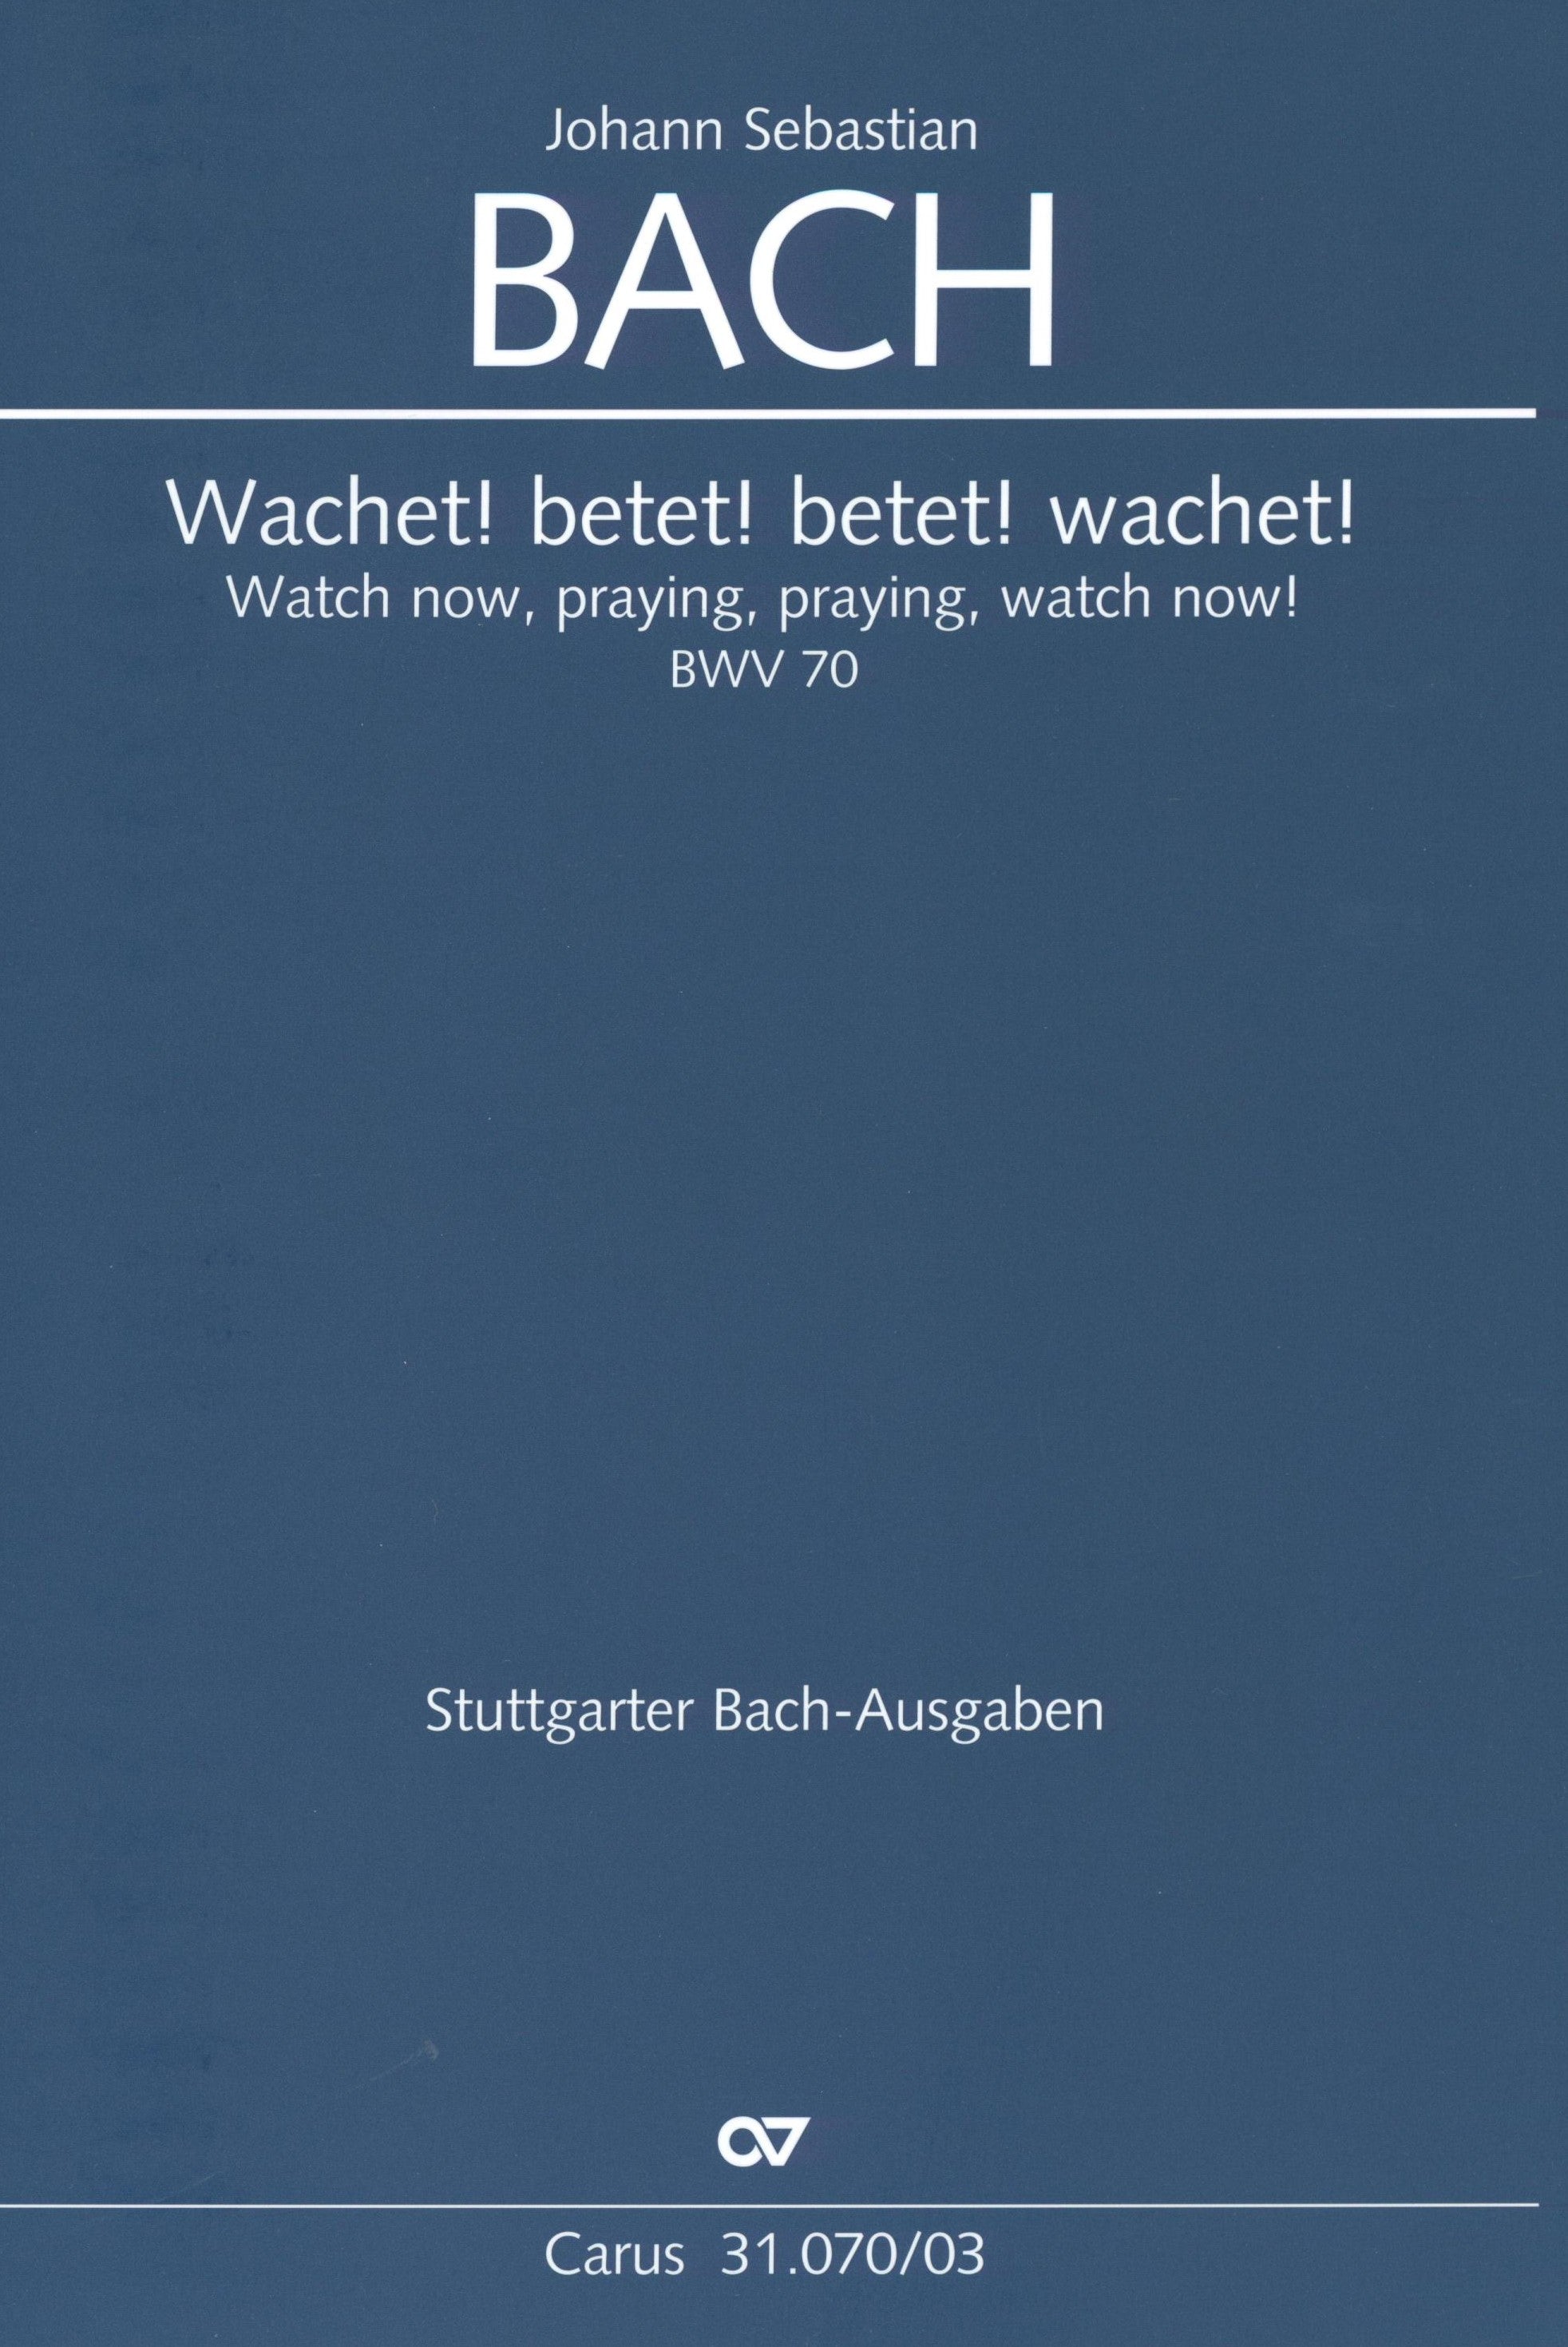 Bach: Wachet! betet! betet! wachet!, BWV 70